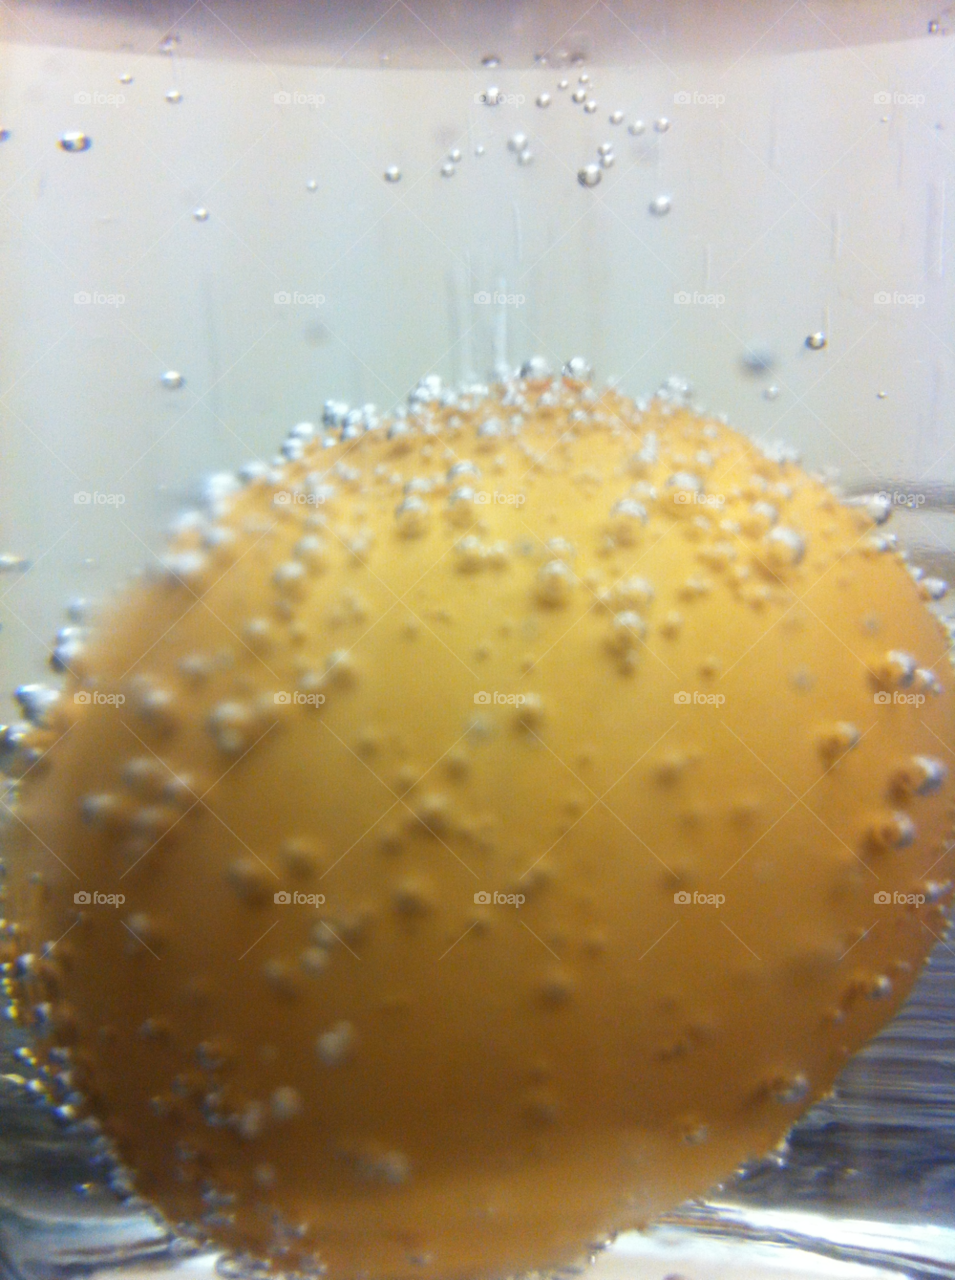 Egg bubbles